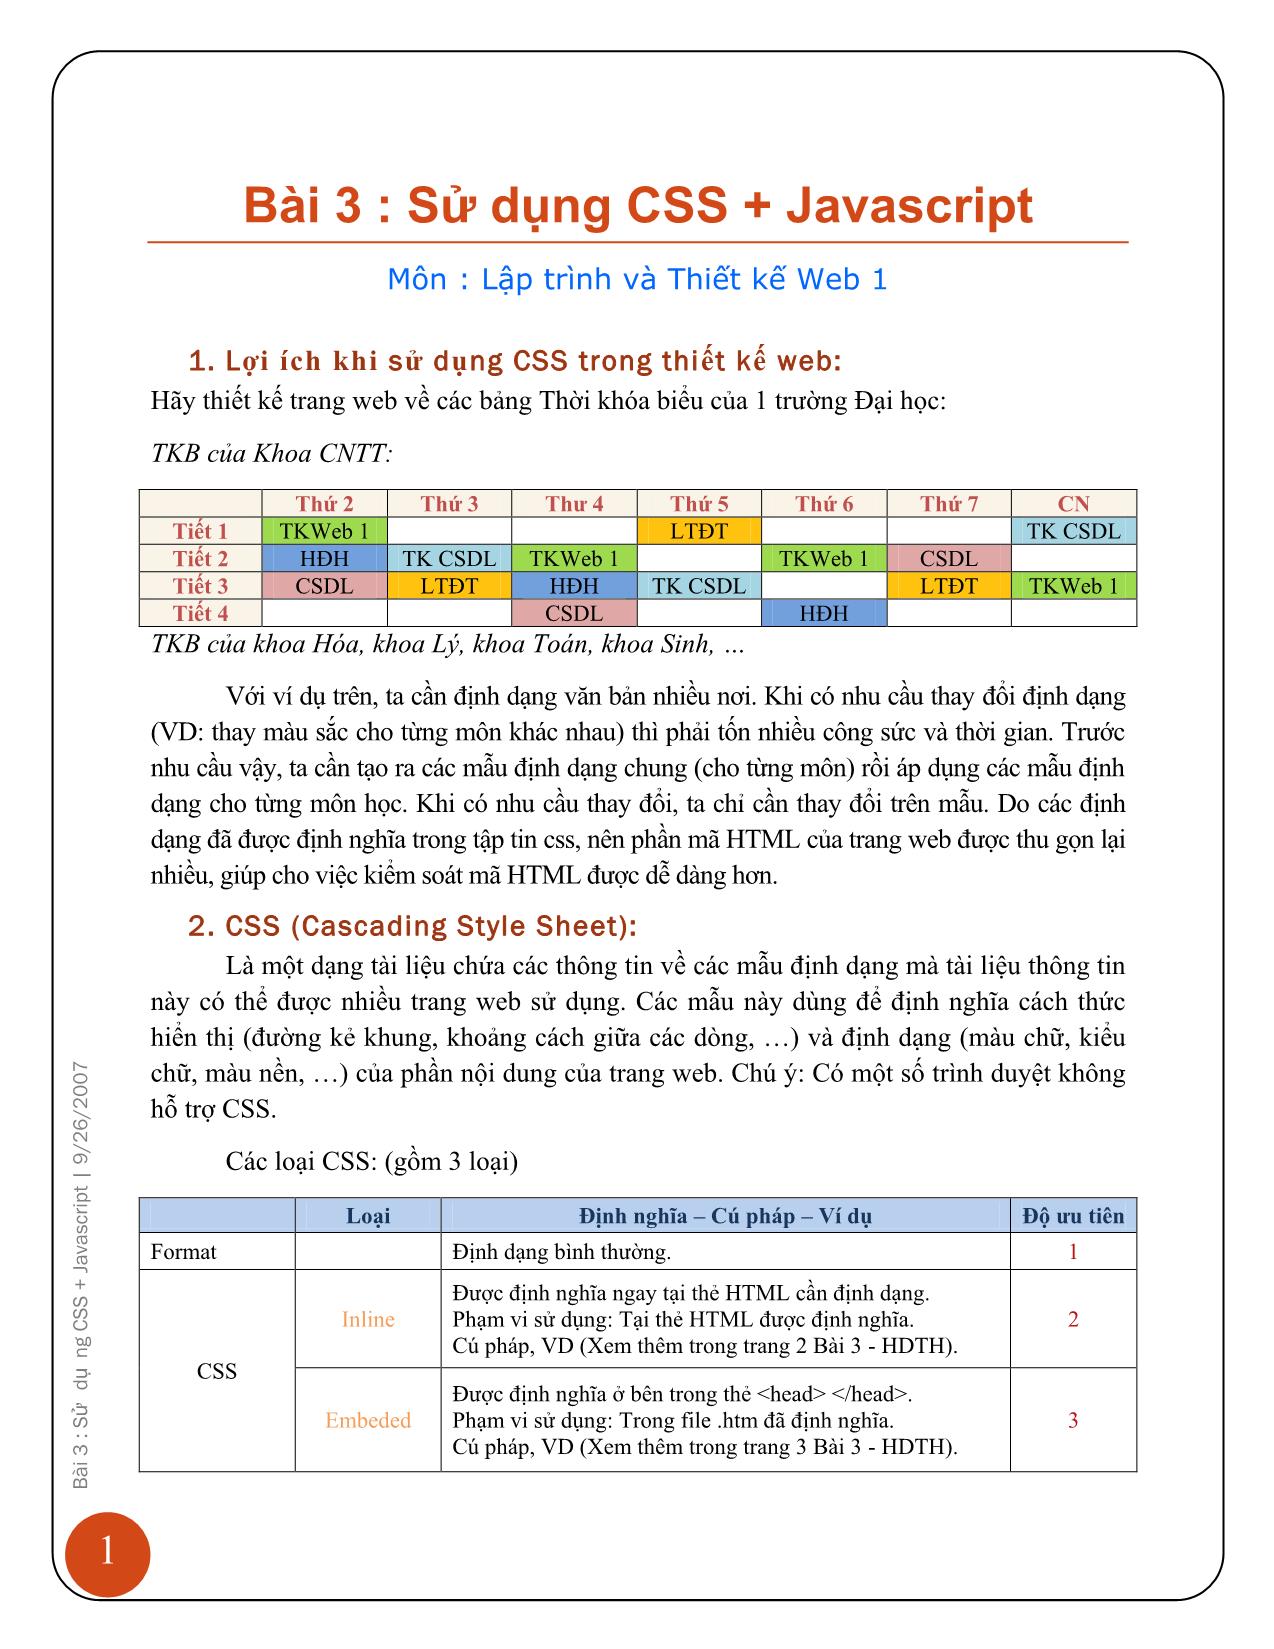 Bài giảng Lập trình và thiết kế web 1 - Bài 3: Sử dụng CSS + JavaScript trang 2